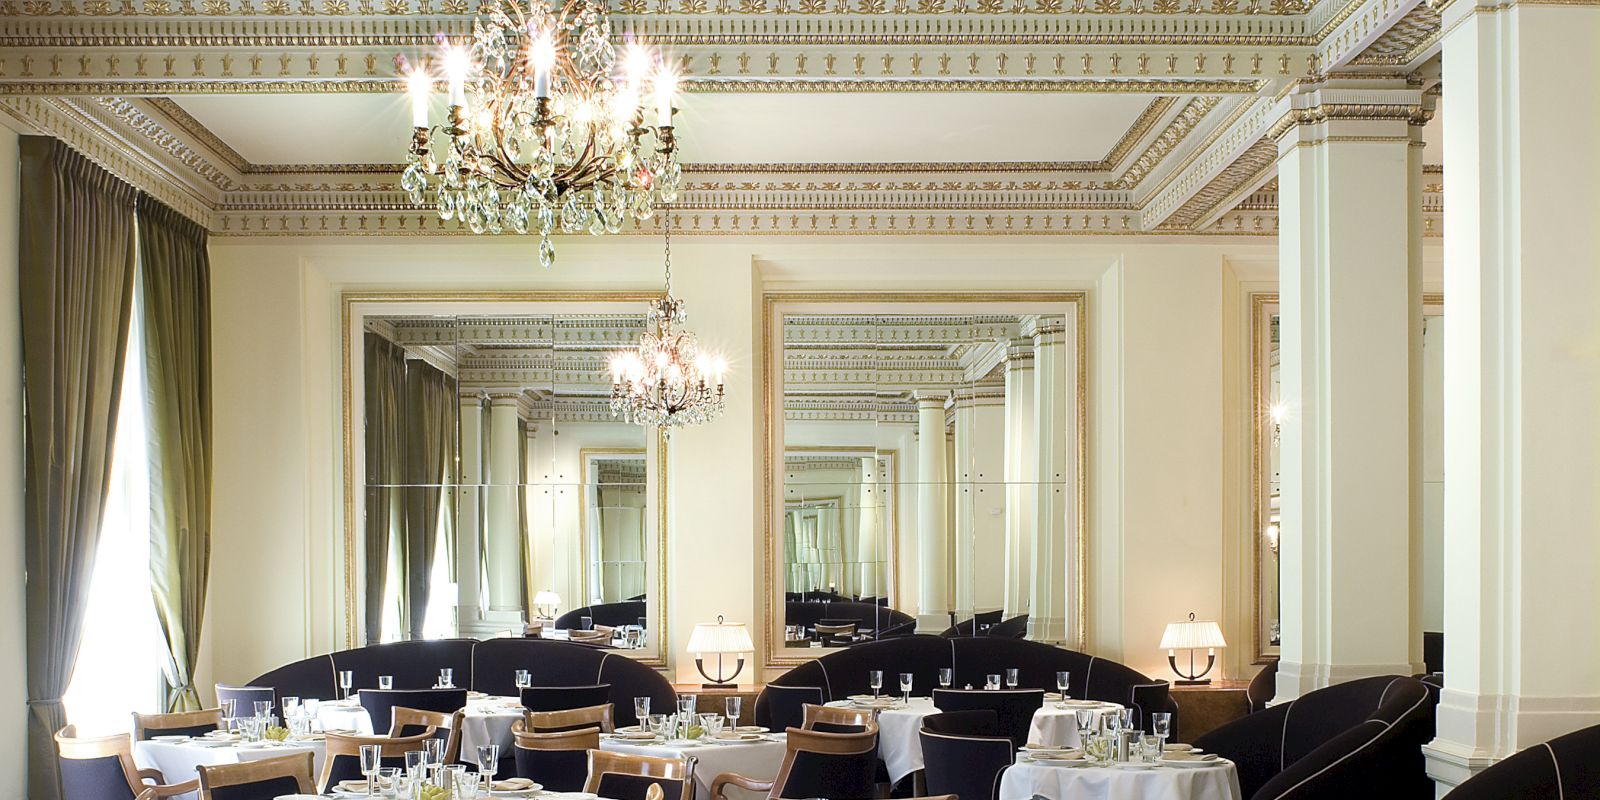 Elegant dining room with tables set, chandelier above, ornate ceiling details.